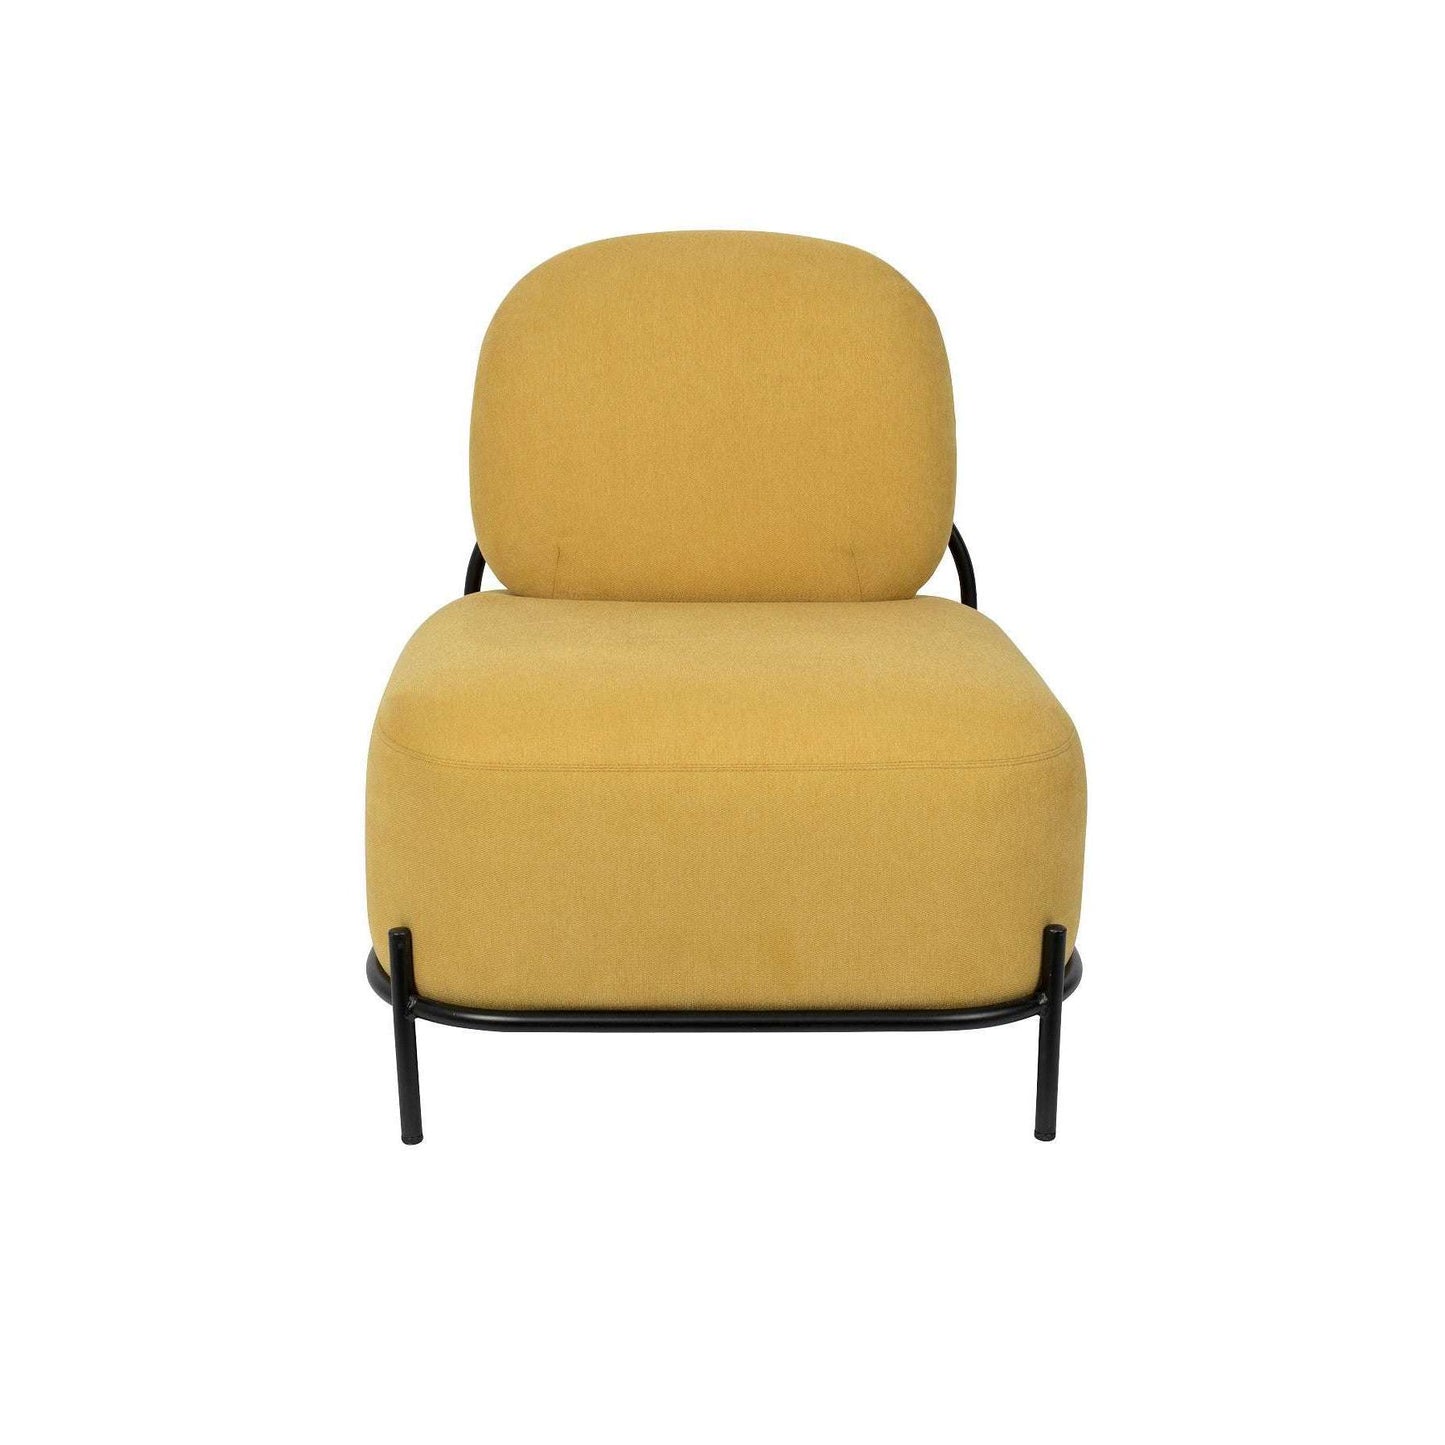 Staerkk fauteuil polly geel 71,5 x 66 x 77 cm